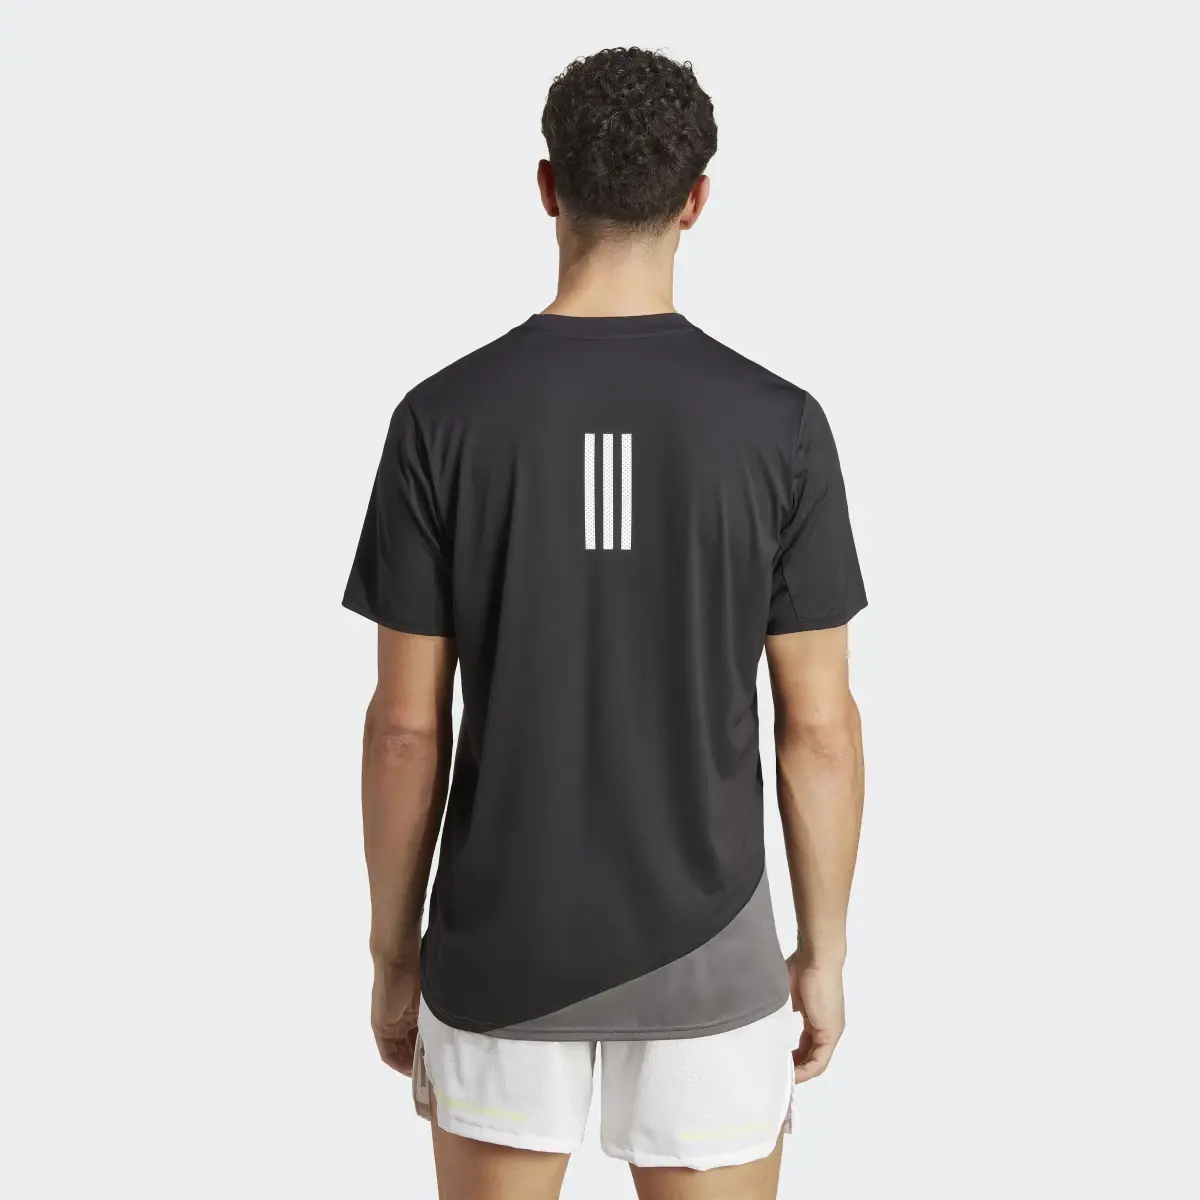 Adidas T-shirt de Running Made to be Remade. 3